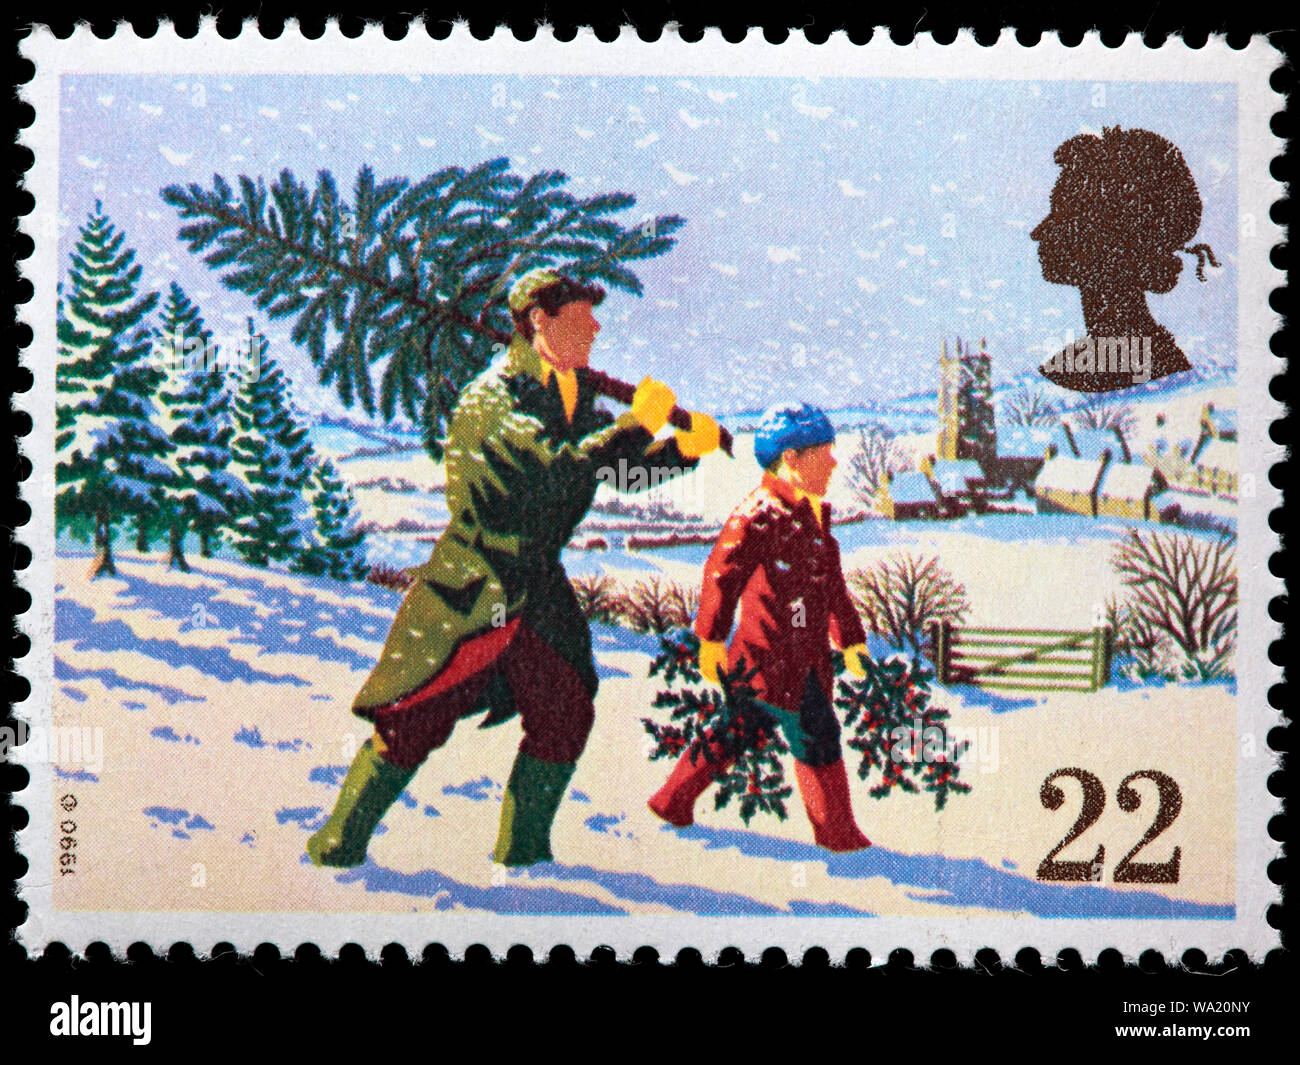 Abrufen der Weihnachtsbaum, frohe Weihnachten, Briefmarke, UK, 1990  Stockfotografie - Alamy